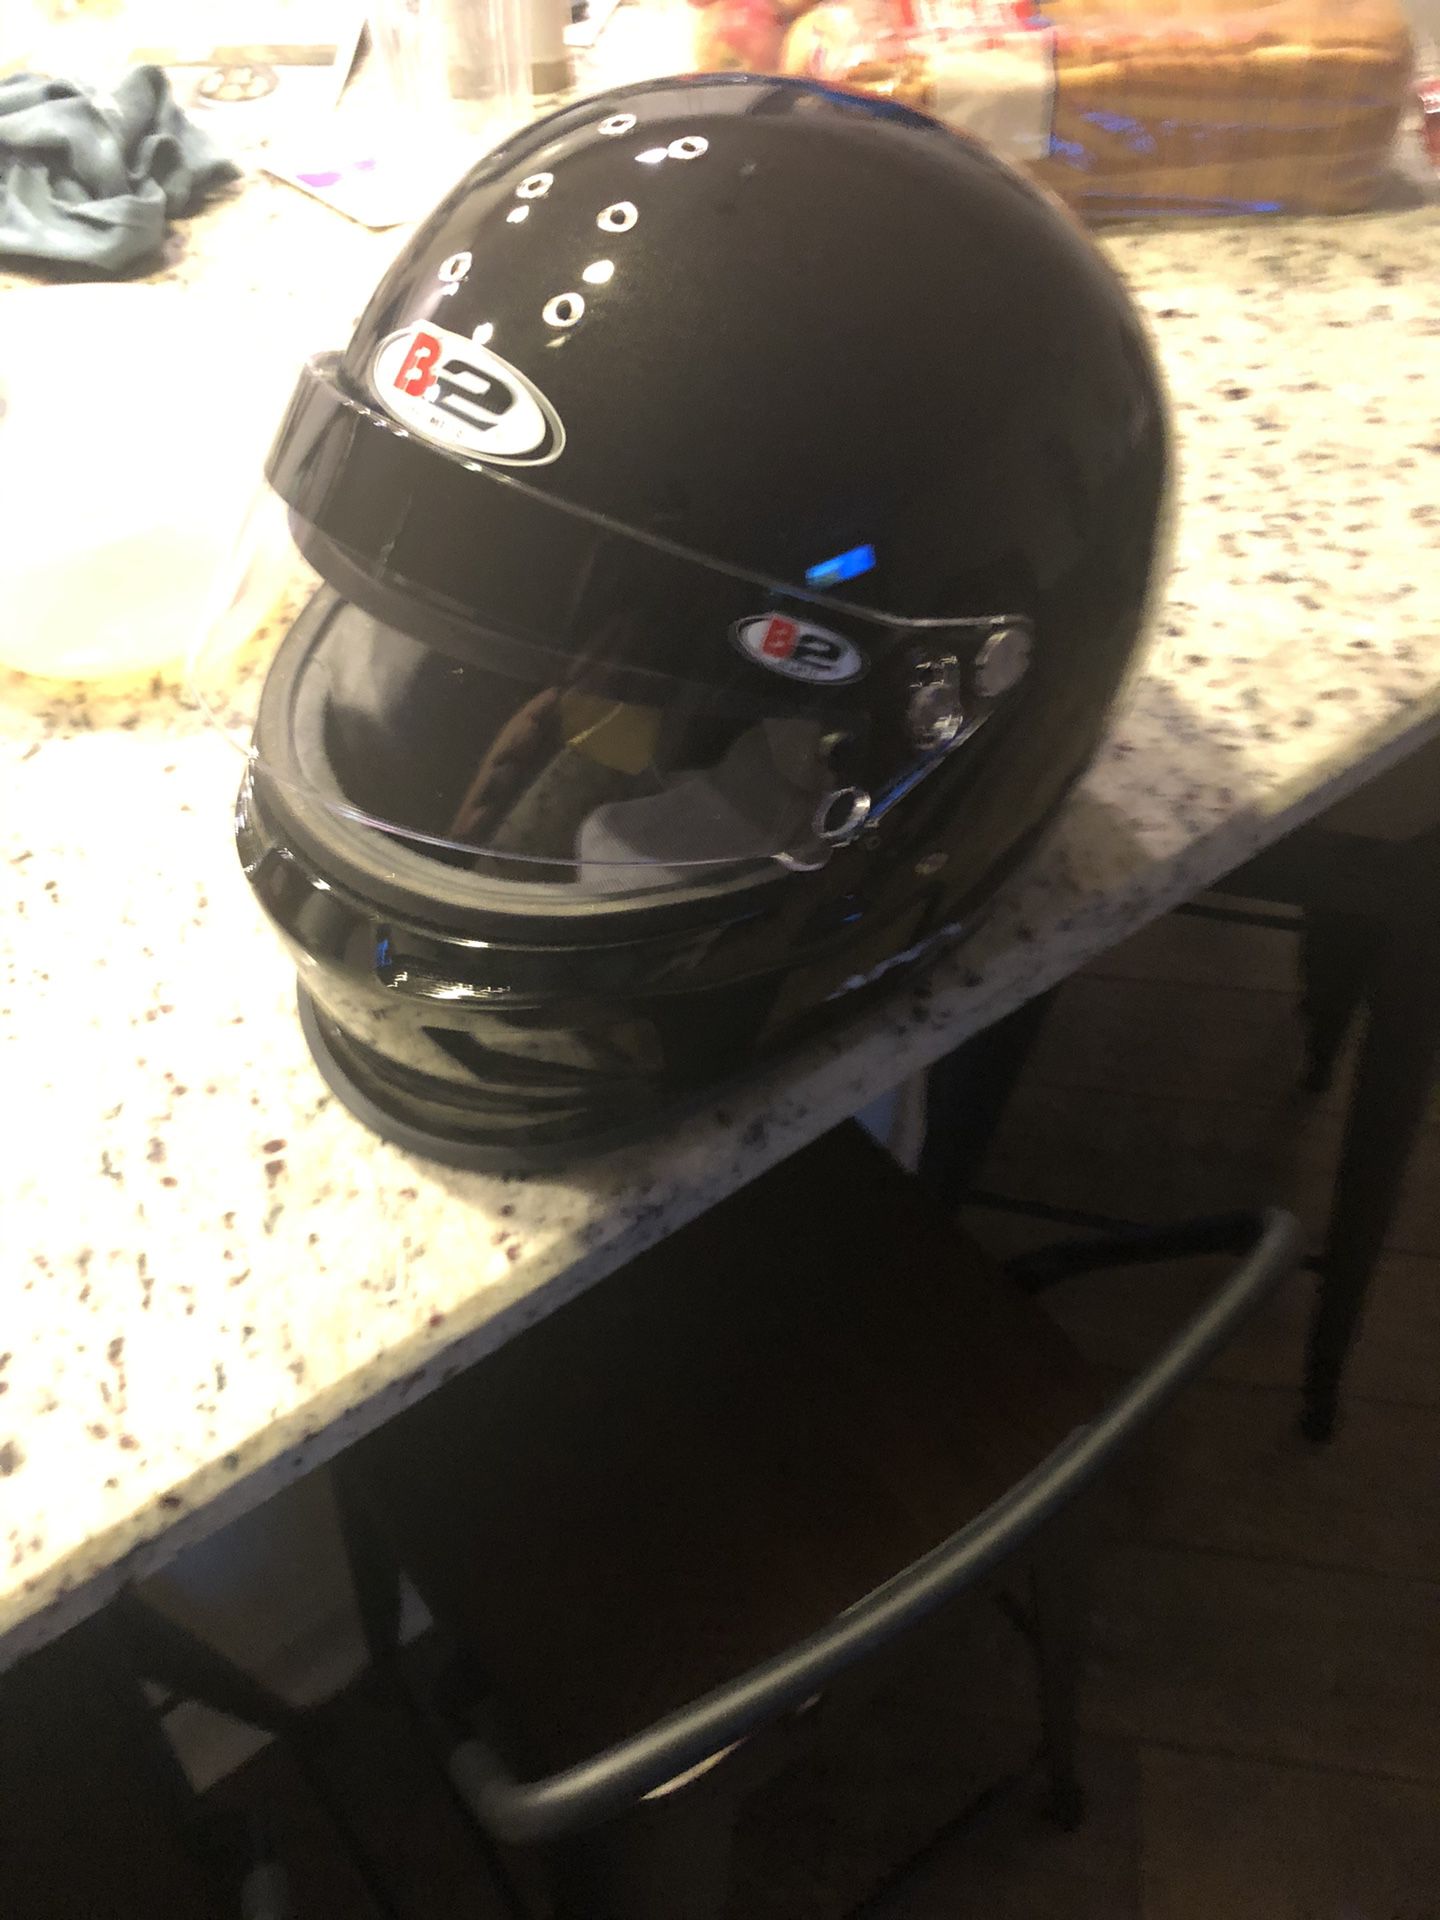 B2 Racing Helmet